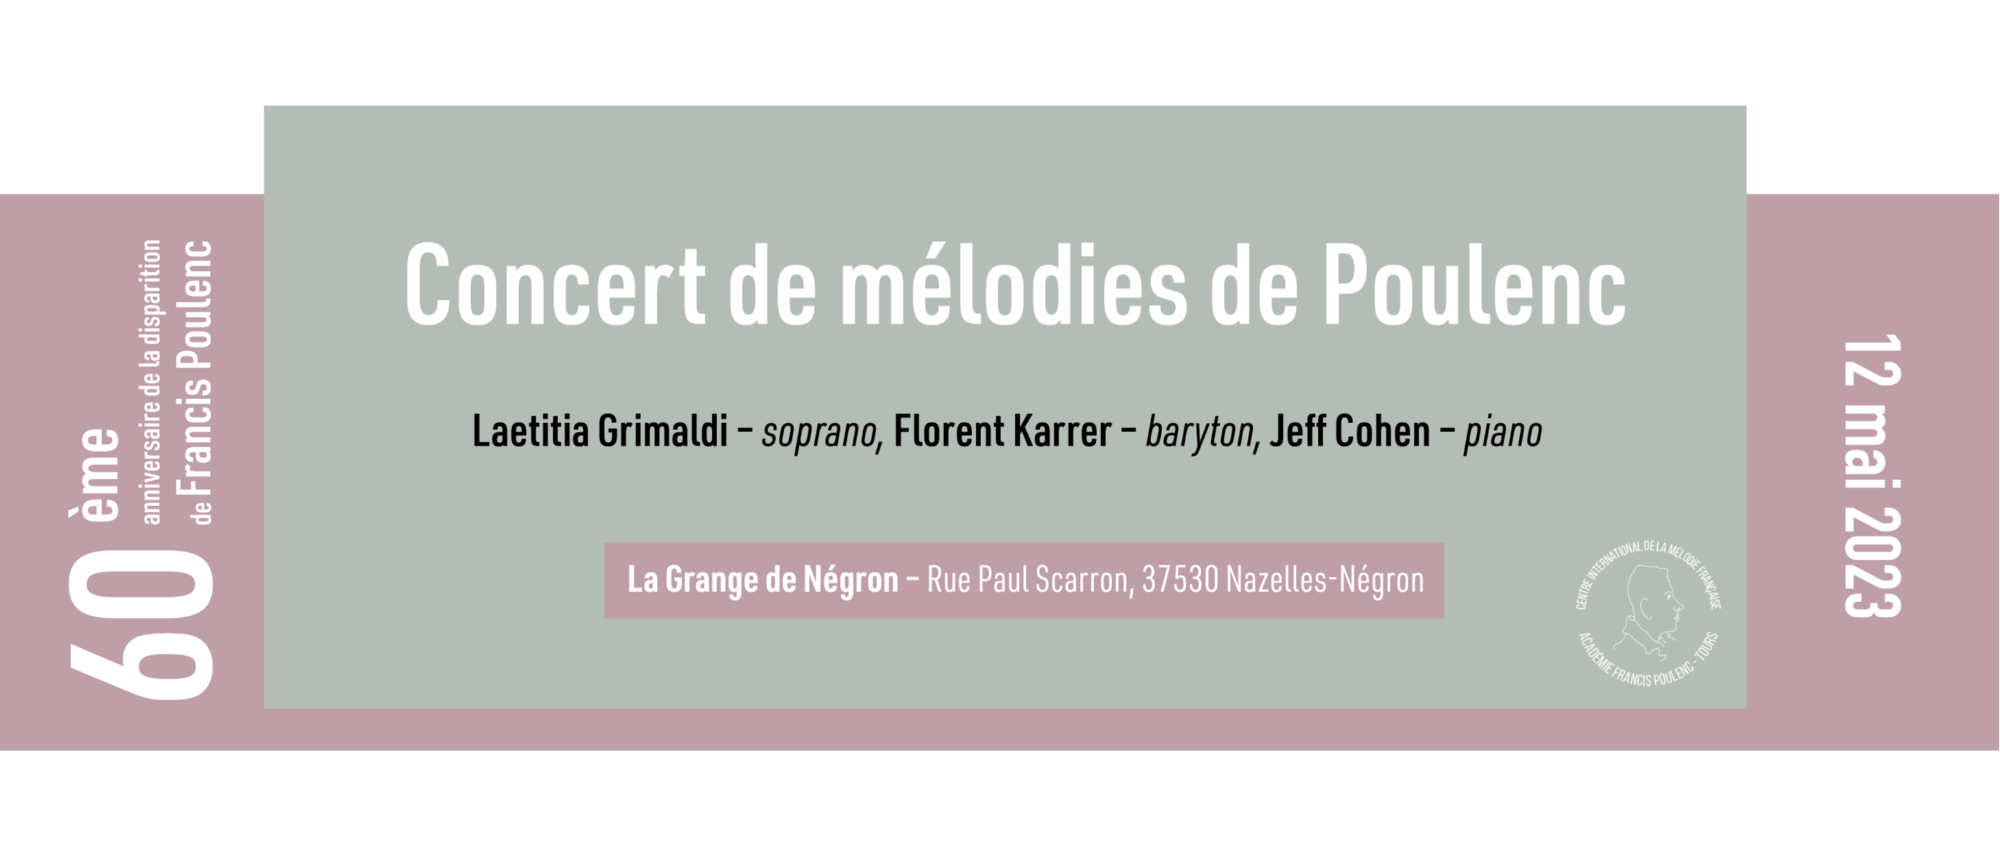 Concert de mélodies de Poulenc